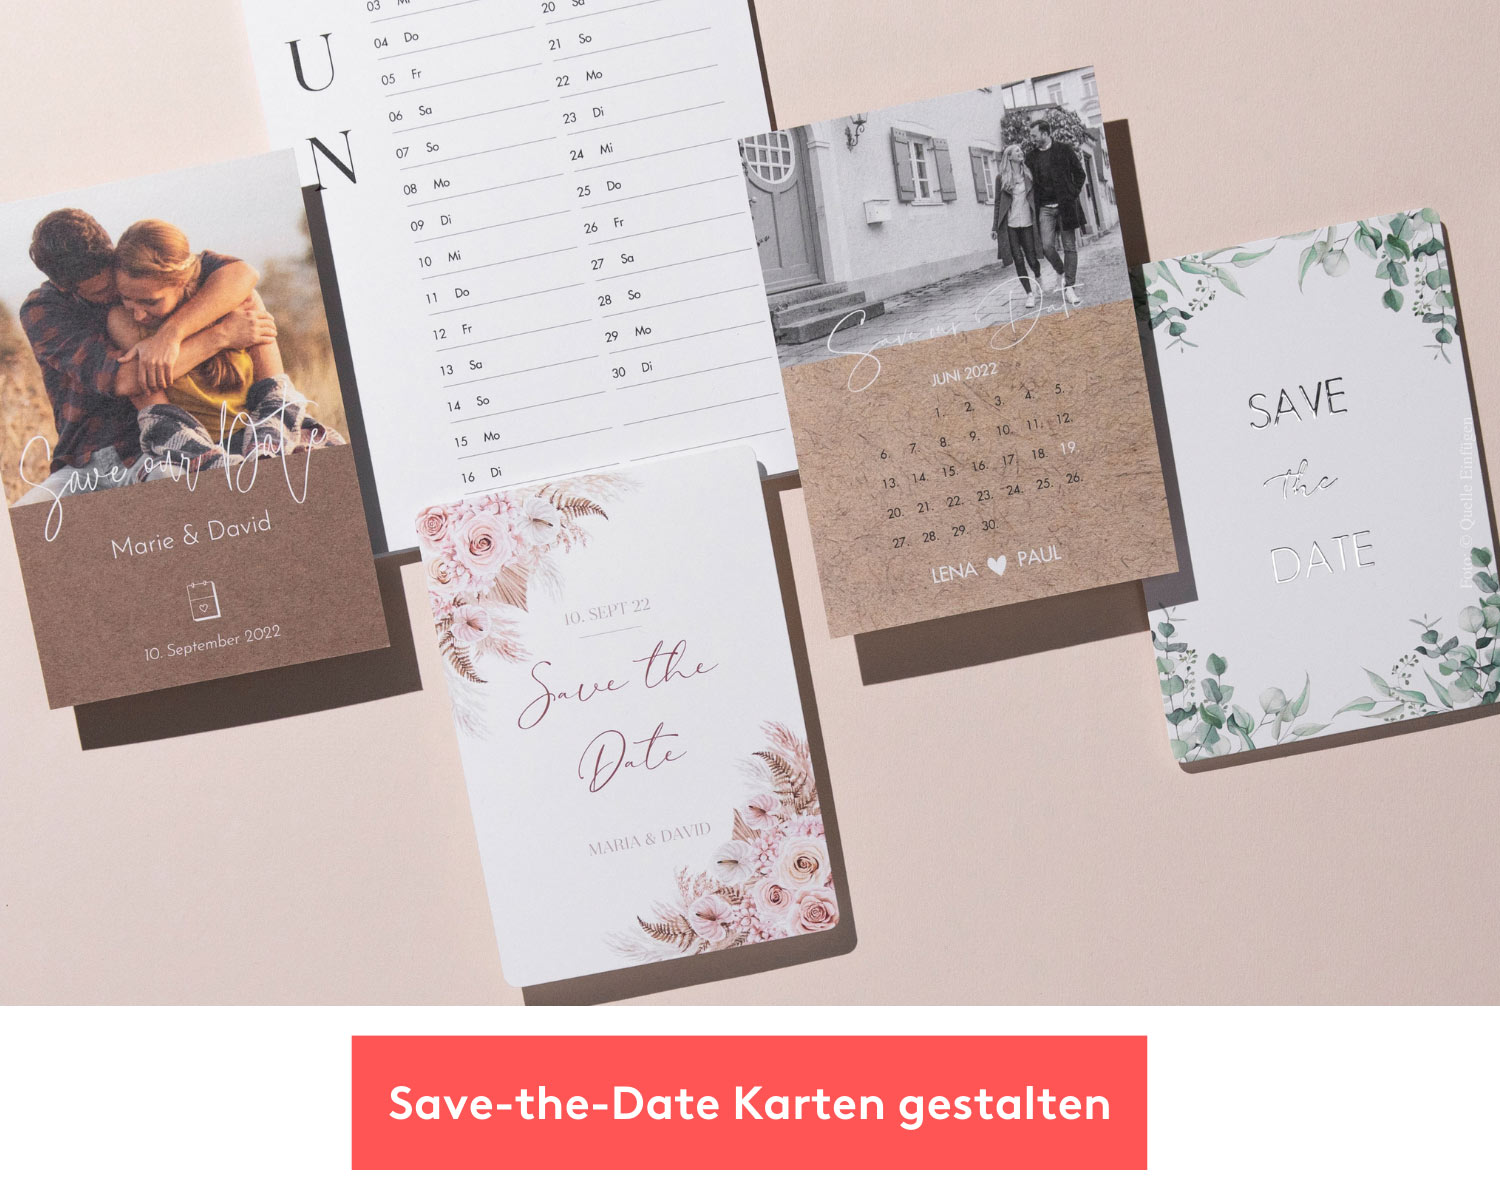 Save the Date Karten gestalten